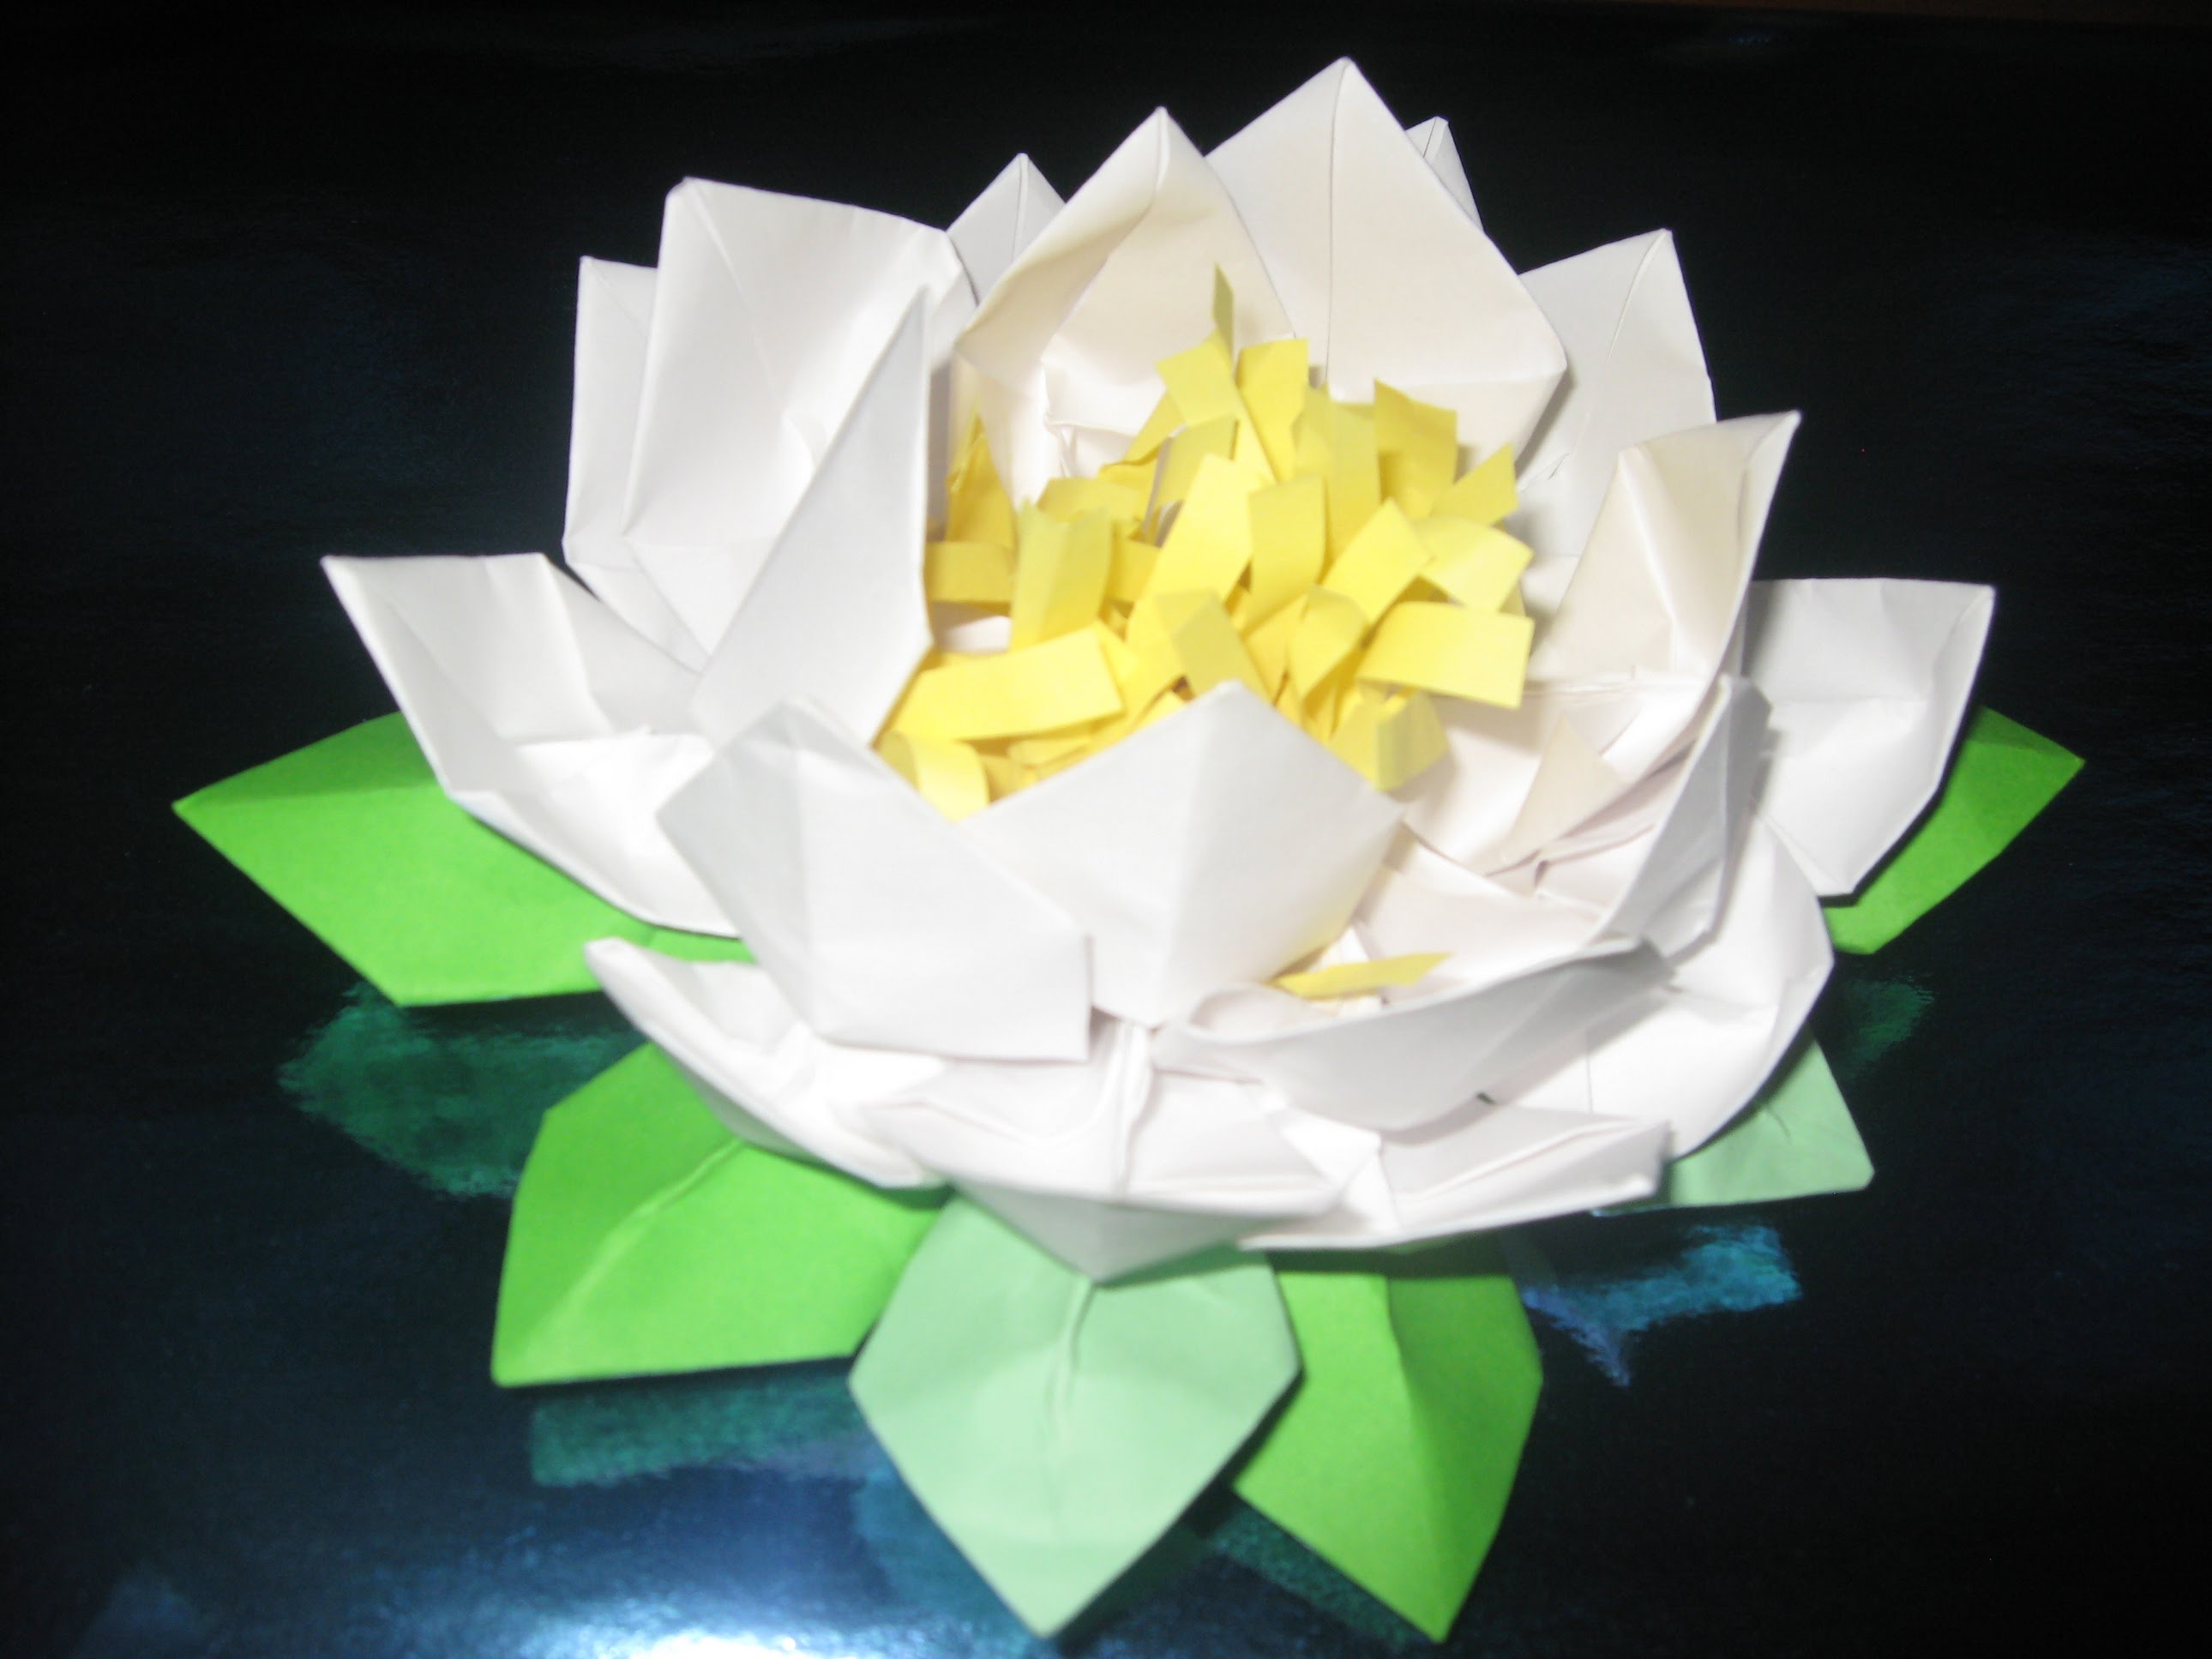 Как красиво сделать цветок лотос из салфеток